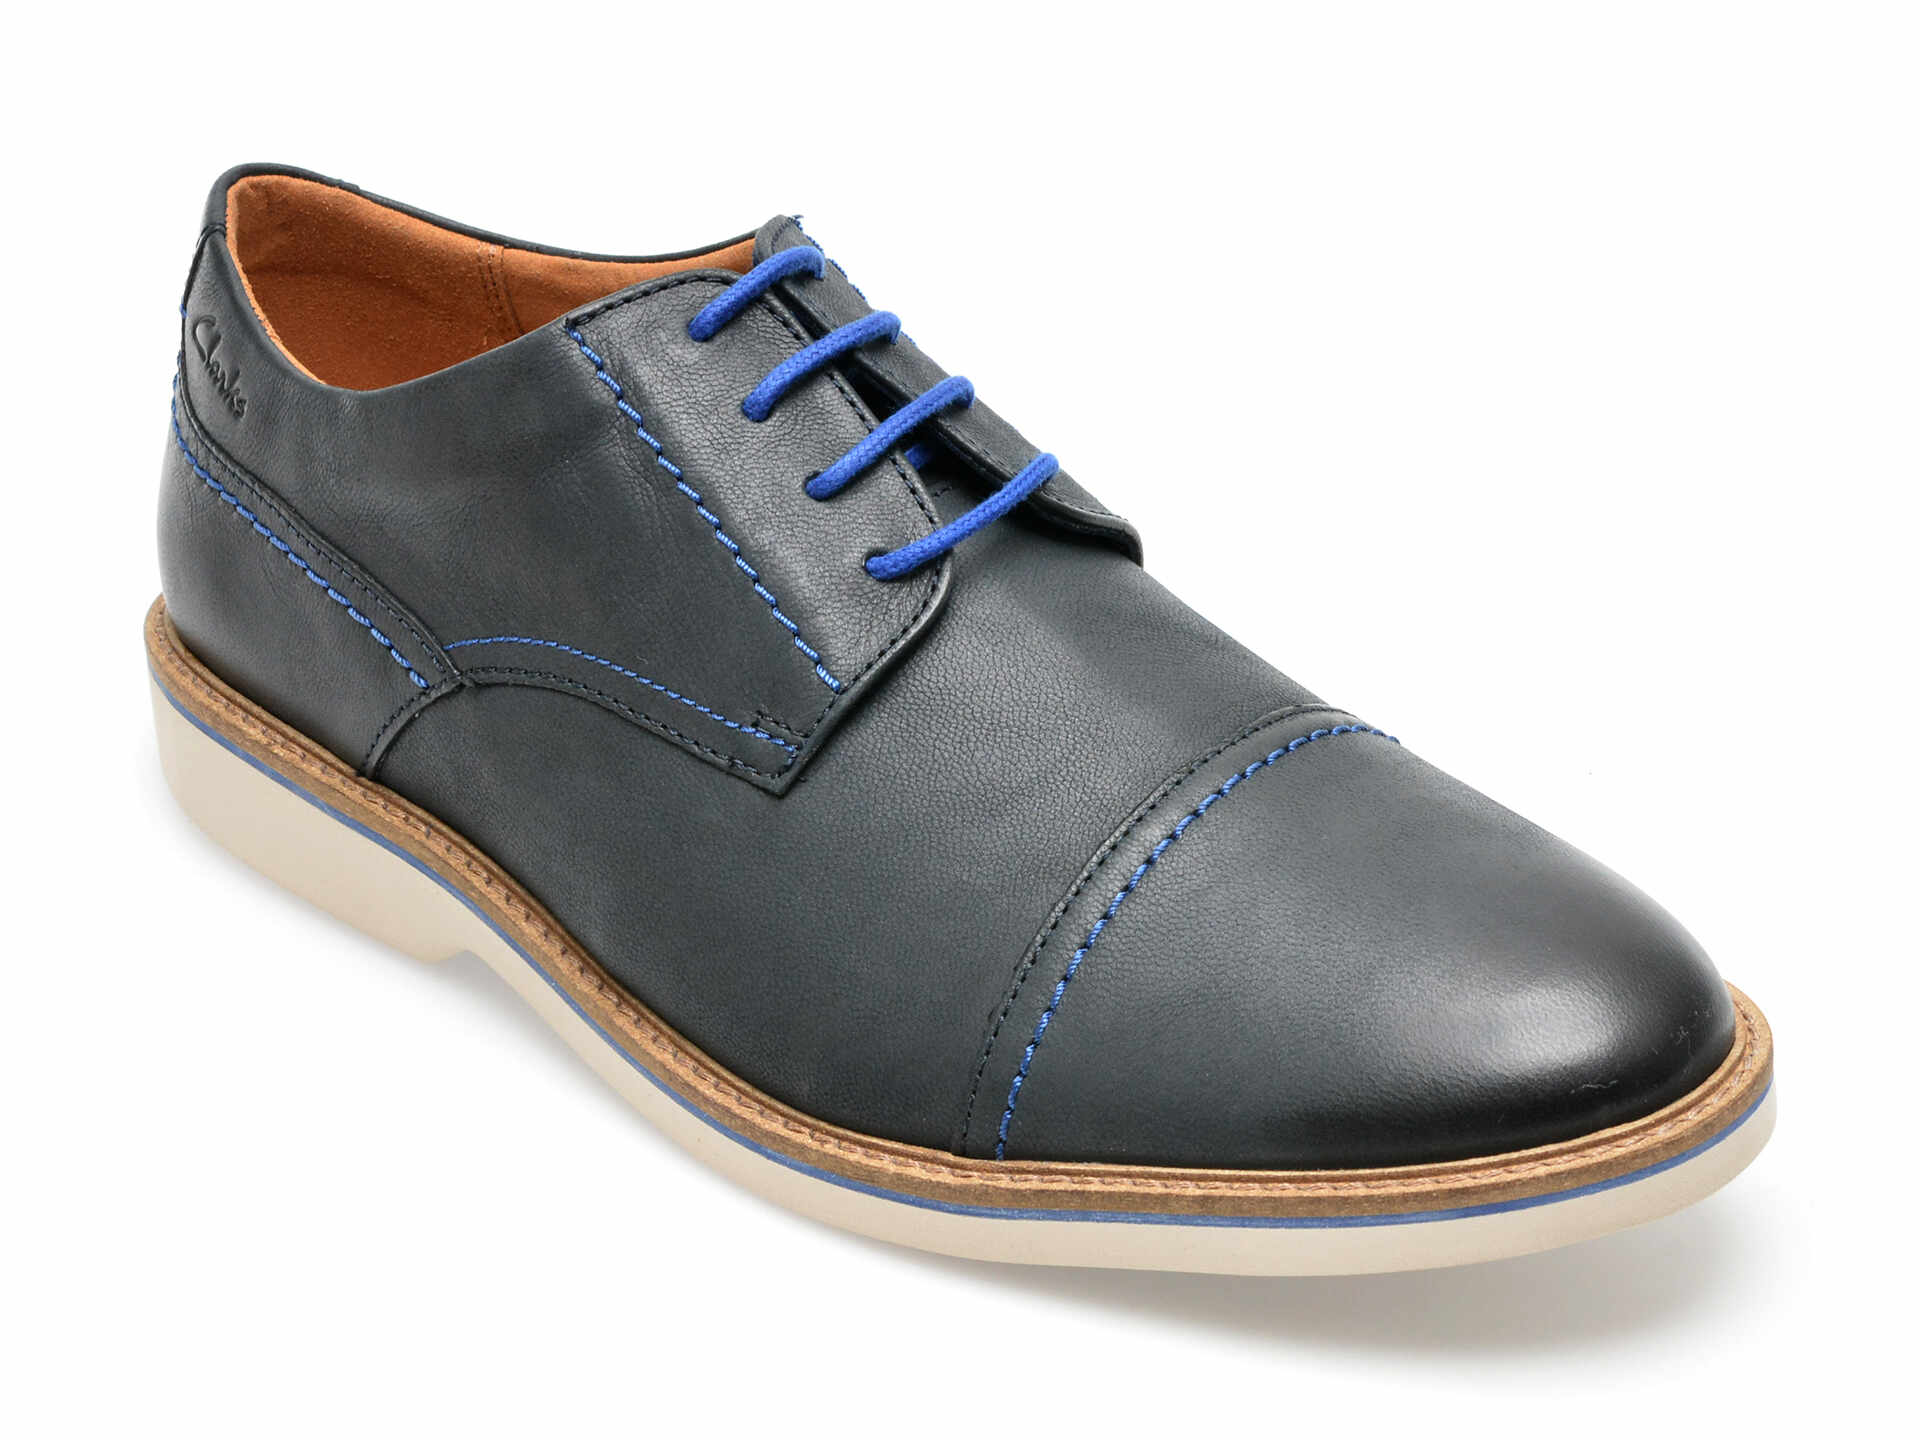 Pantofi CLARKS bleumarin, ATTICUS LT CAP 0912, din piele naturala